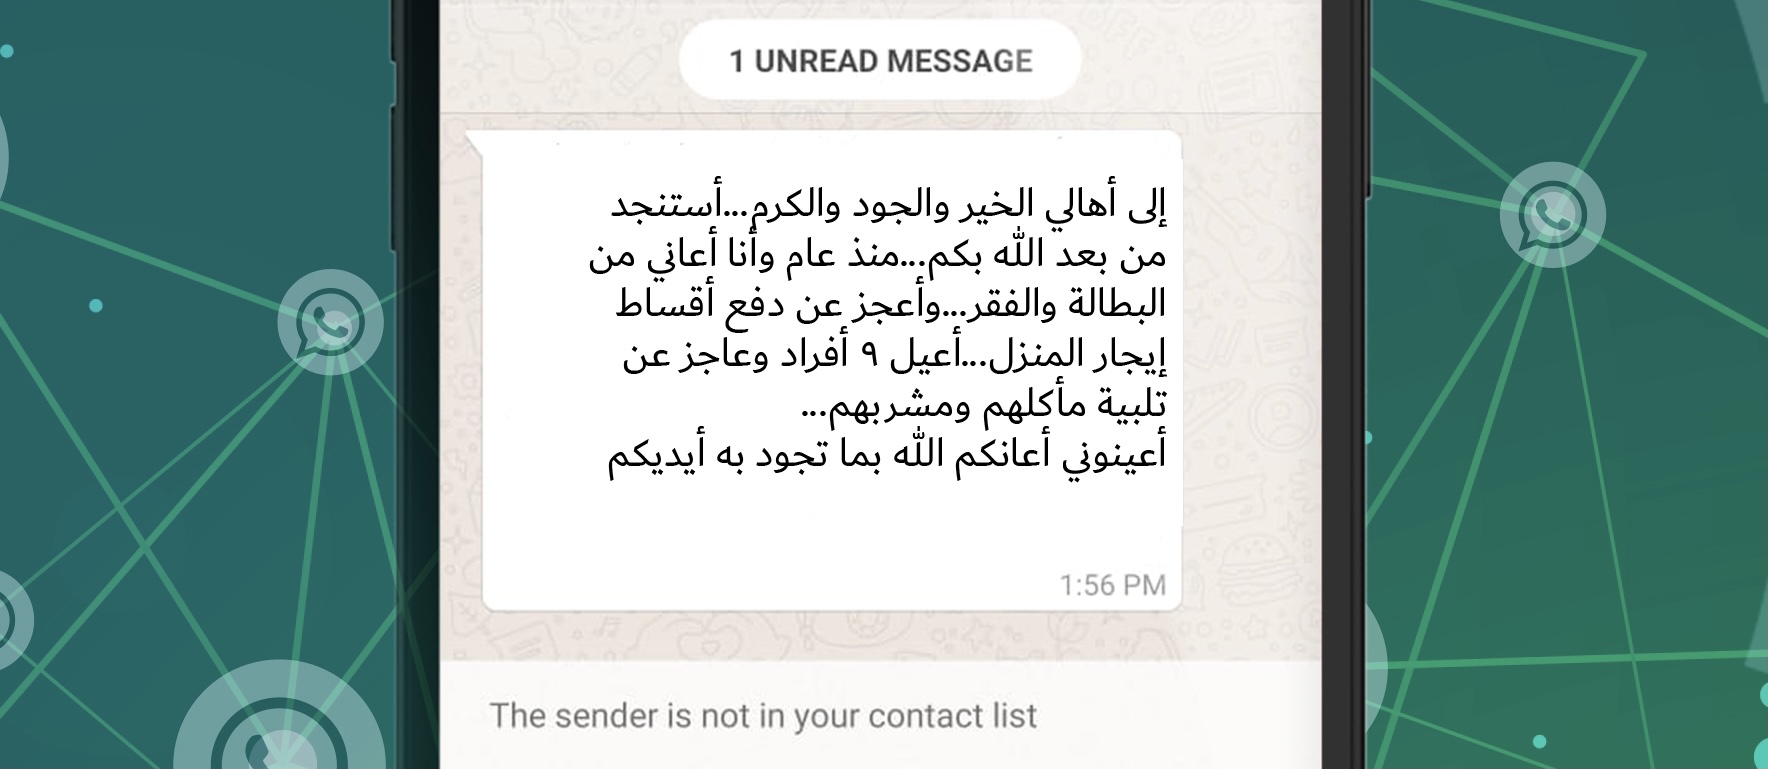 شرطة دبي تلقي القبض على متسول يستعطف ضحاياه برسائل "الواتس أب"